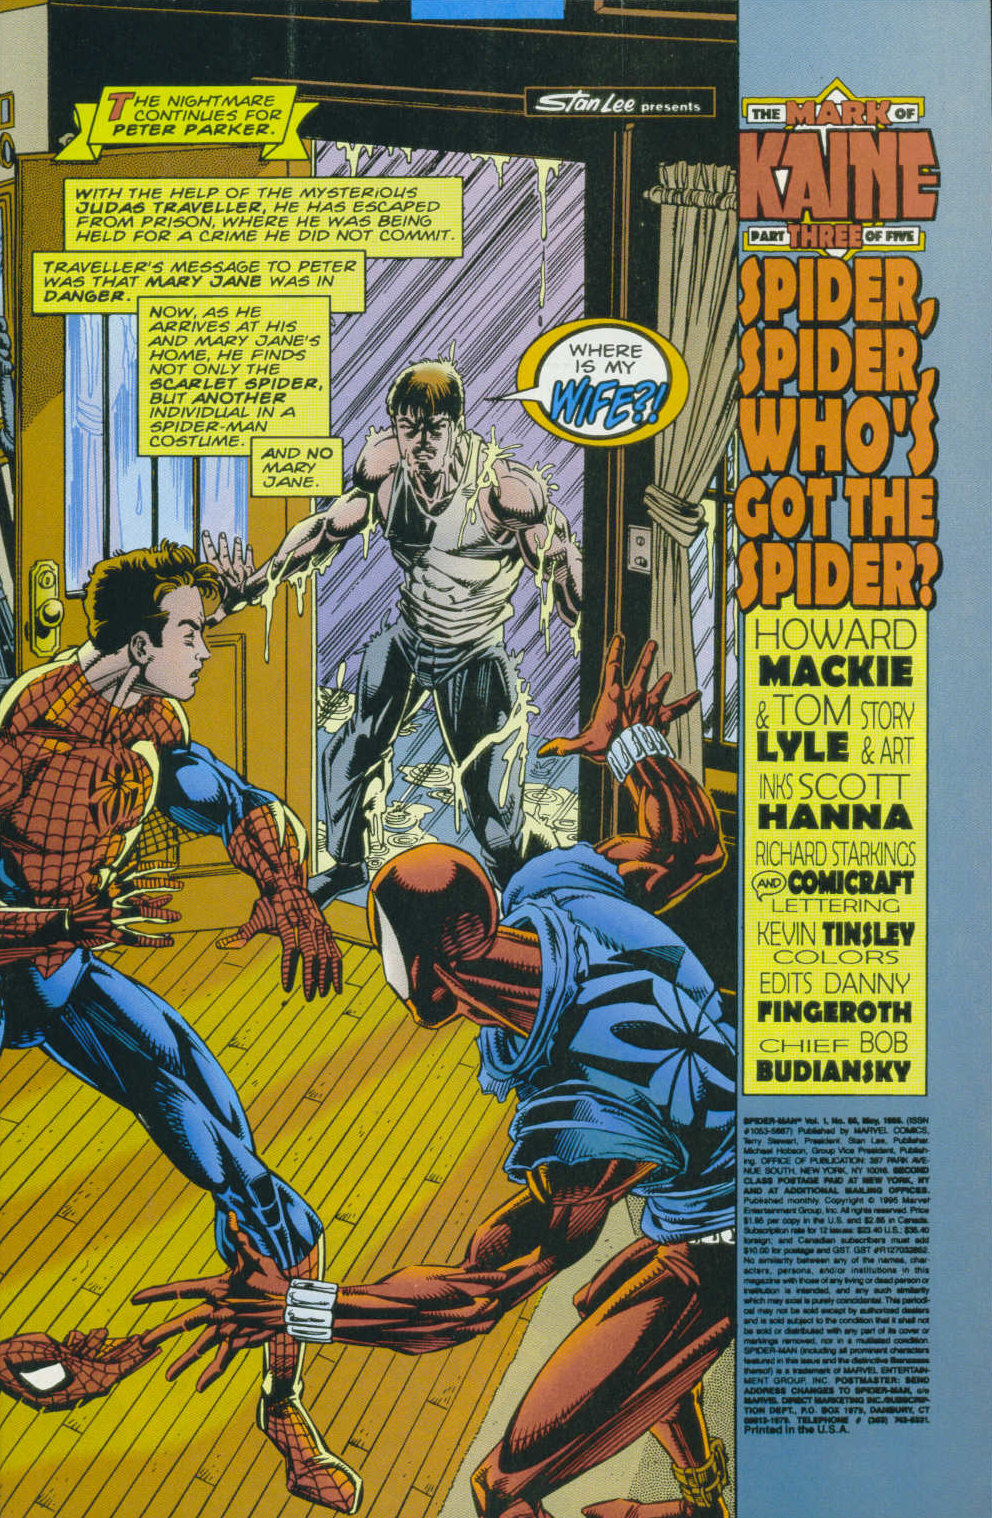 Read online Spider-Man (1990) comic -  Issue #58 - Spider, Spider, Who's Got The Spider - 2